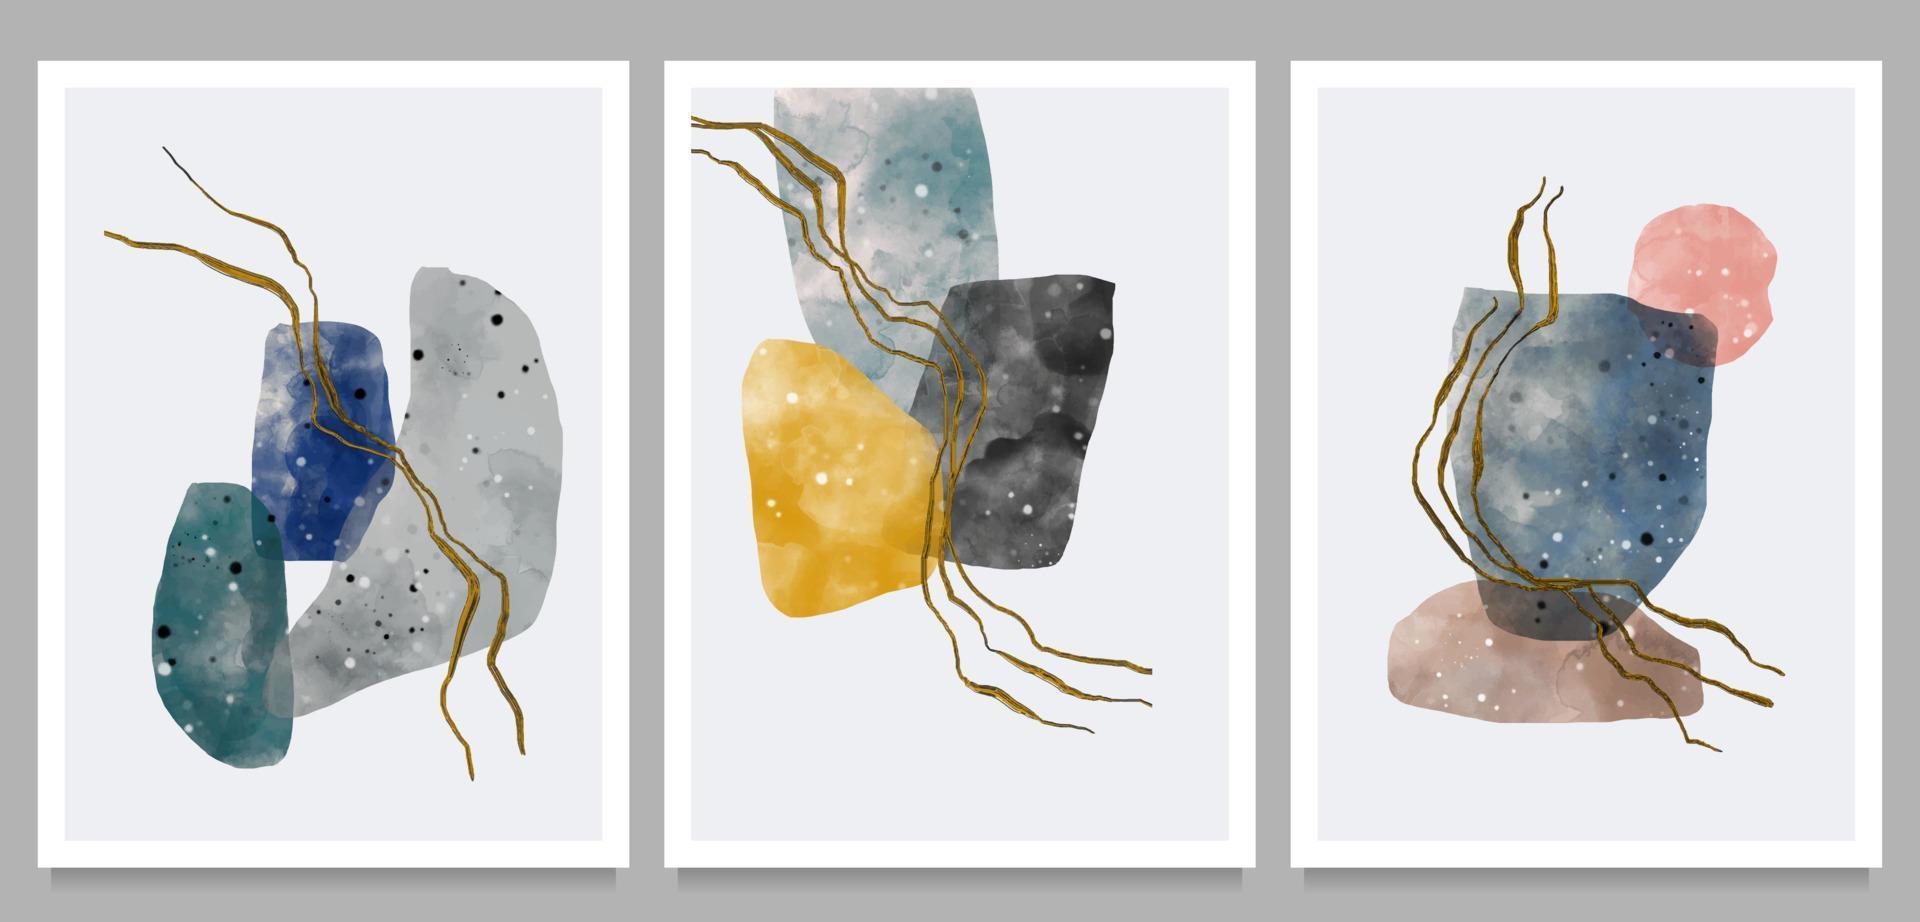 verzameling abstracte creatieve minimalistische handgeschilderde illustraties. verschillende vormen en organische moderne kunstobjecten voor achtergrond, sociale media, wanddecoratie, ansichtkaart. vector illustratie